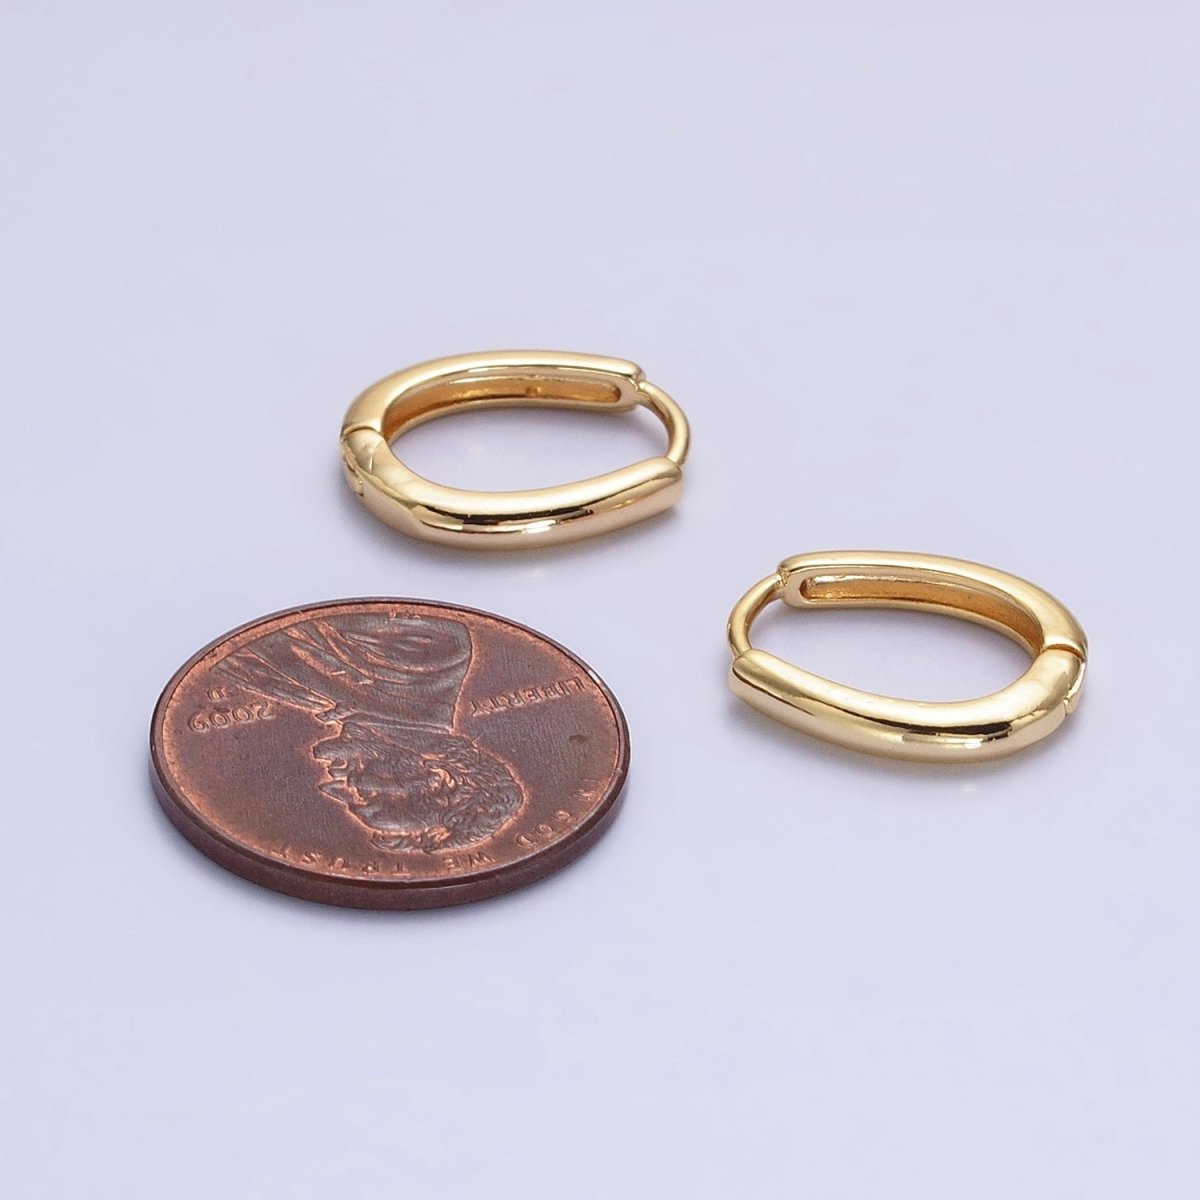 Silver, Gold 14.5mm Oblong Oval Minimalist Hoop Earrings | AB1016 - DLUXCA